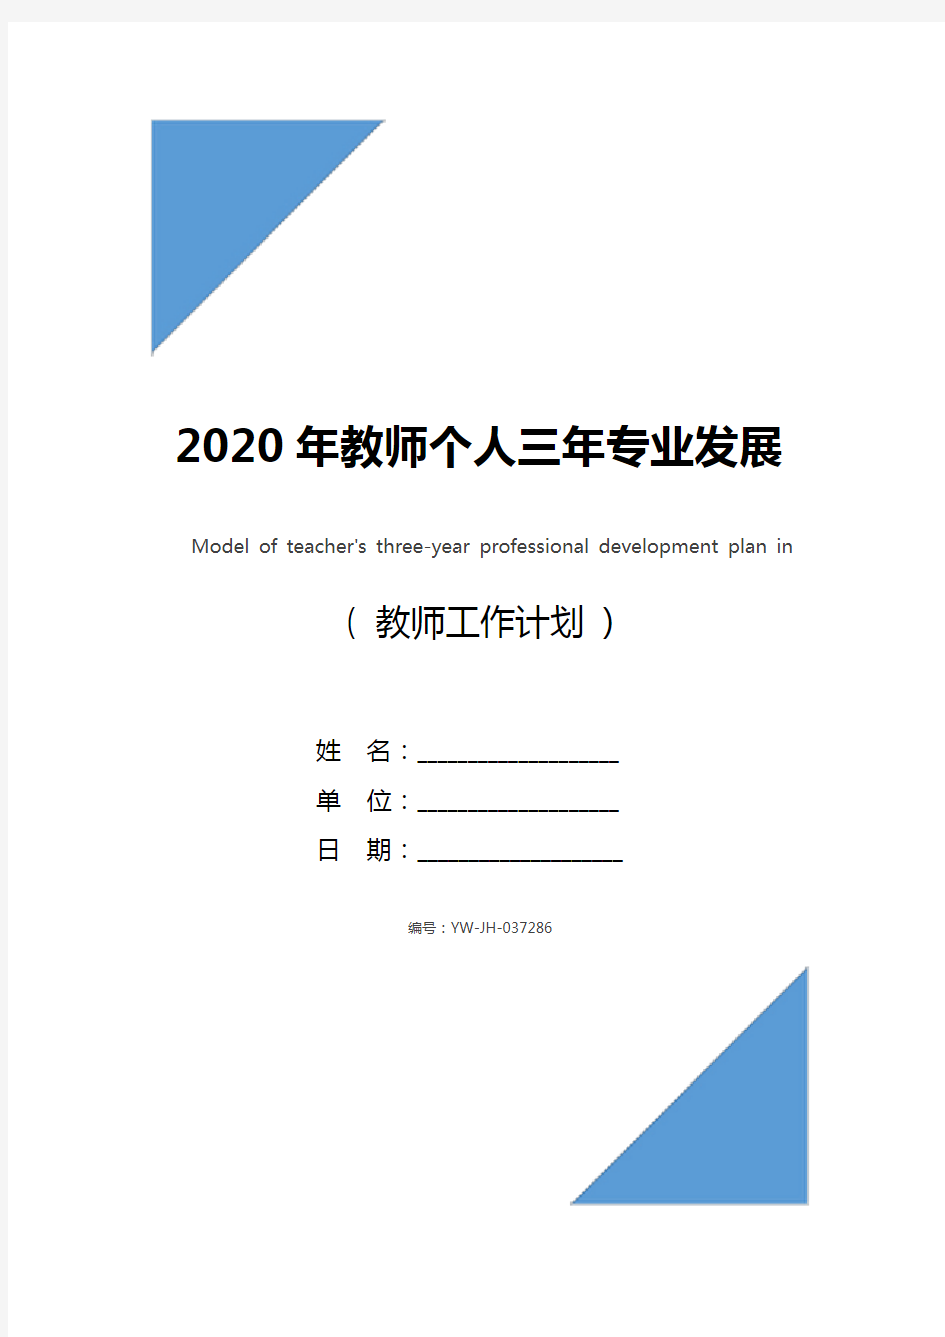 2020年教师个人三年专业发展规划范文